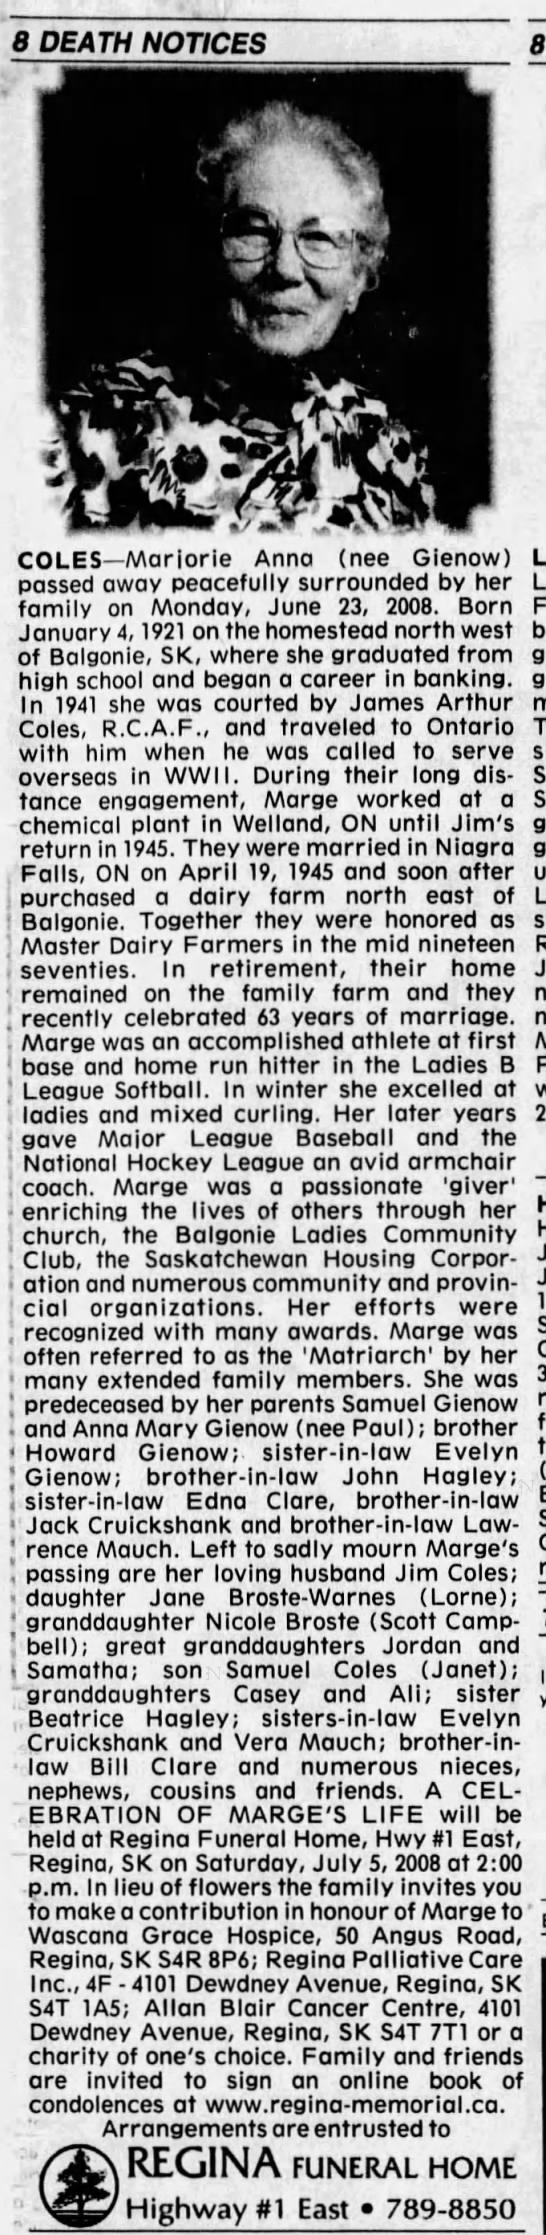 Obituary: Marjorie Anna Coles née Gienow - 